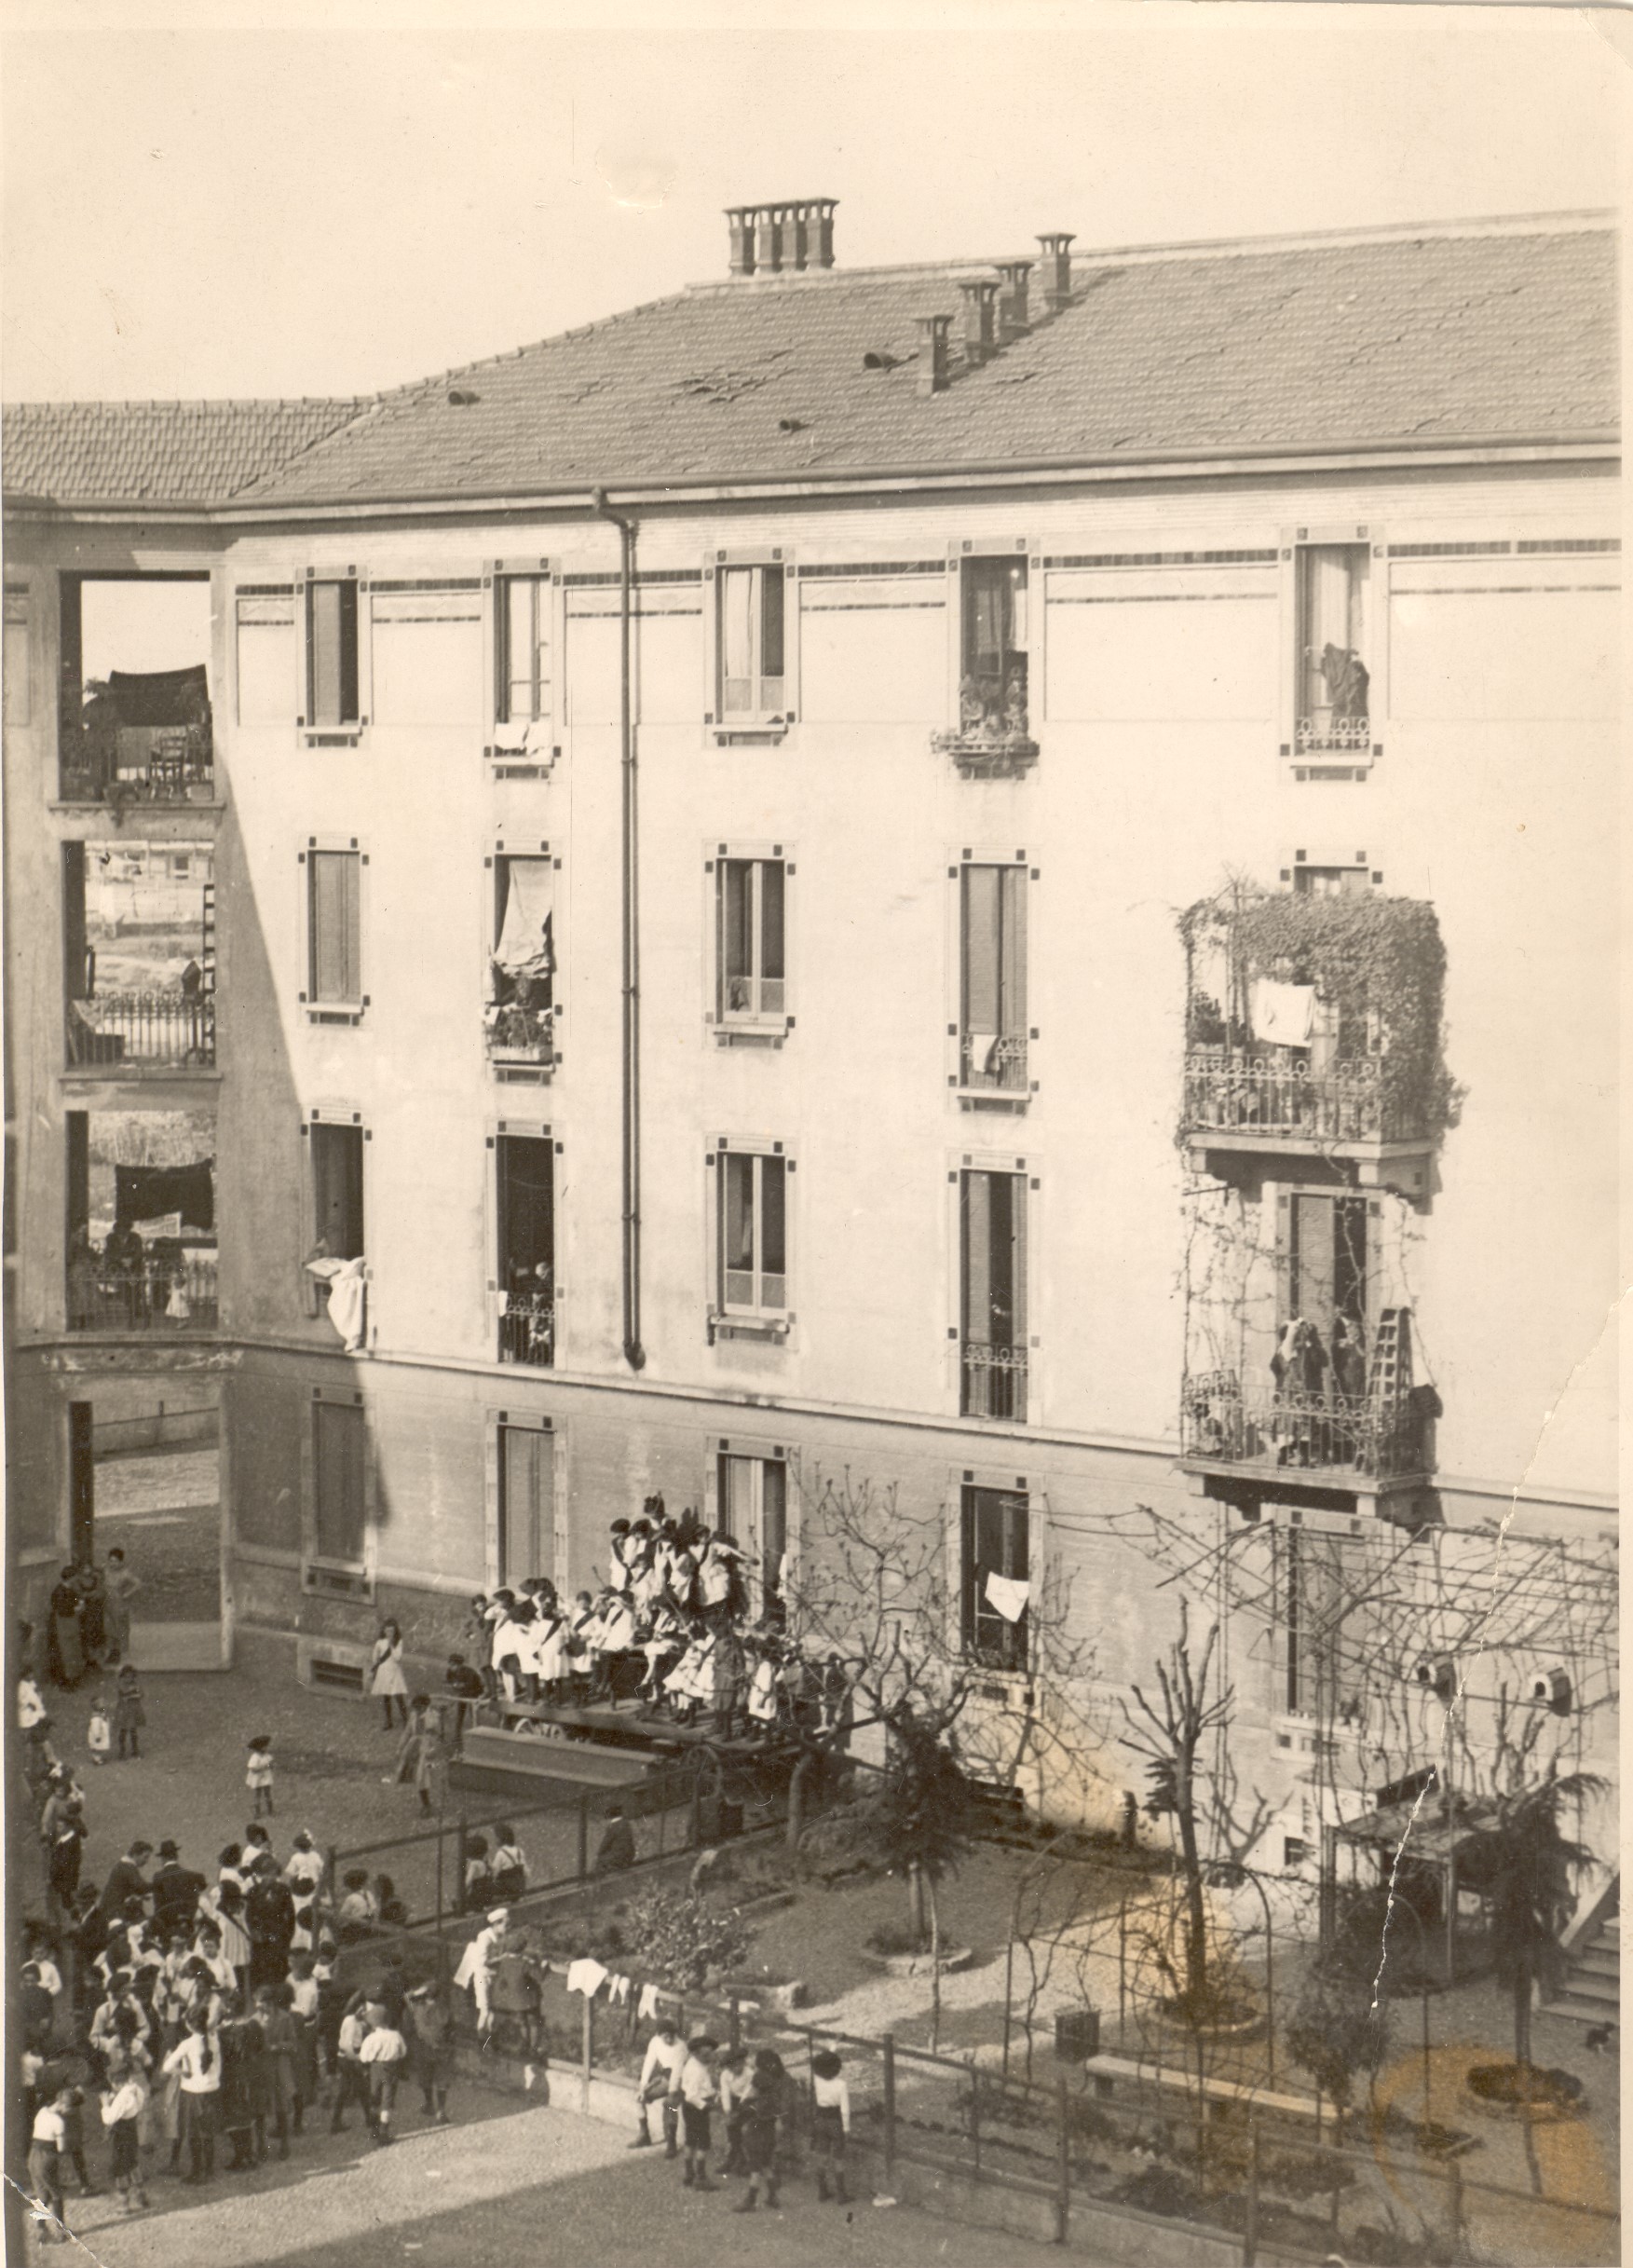 Il cortile e la Casa dei Bambini nel quartiere operaio di via Solari (19010 ca)